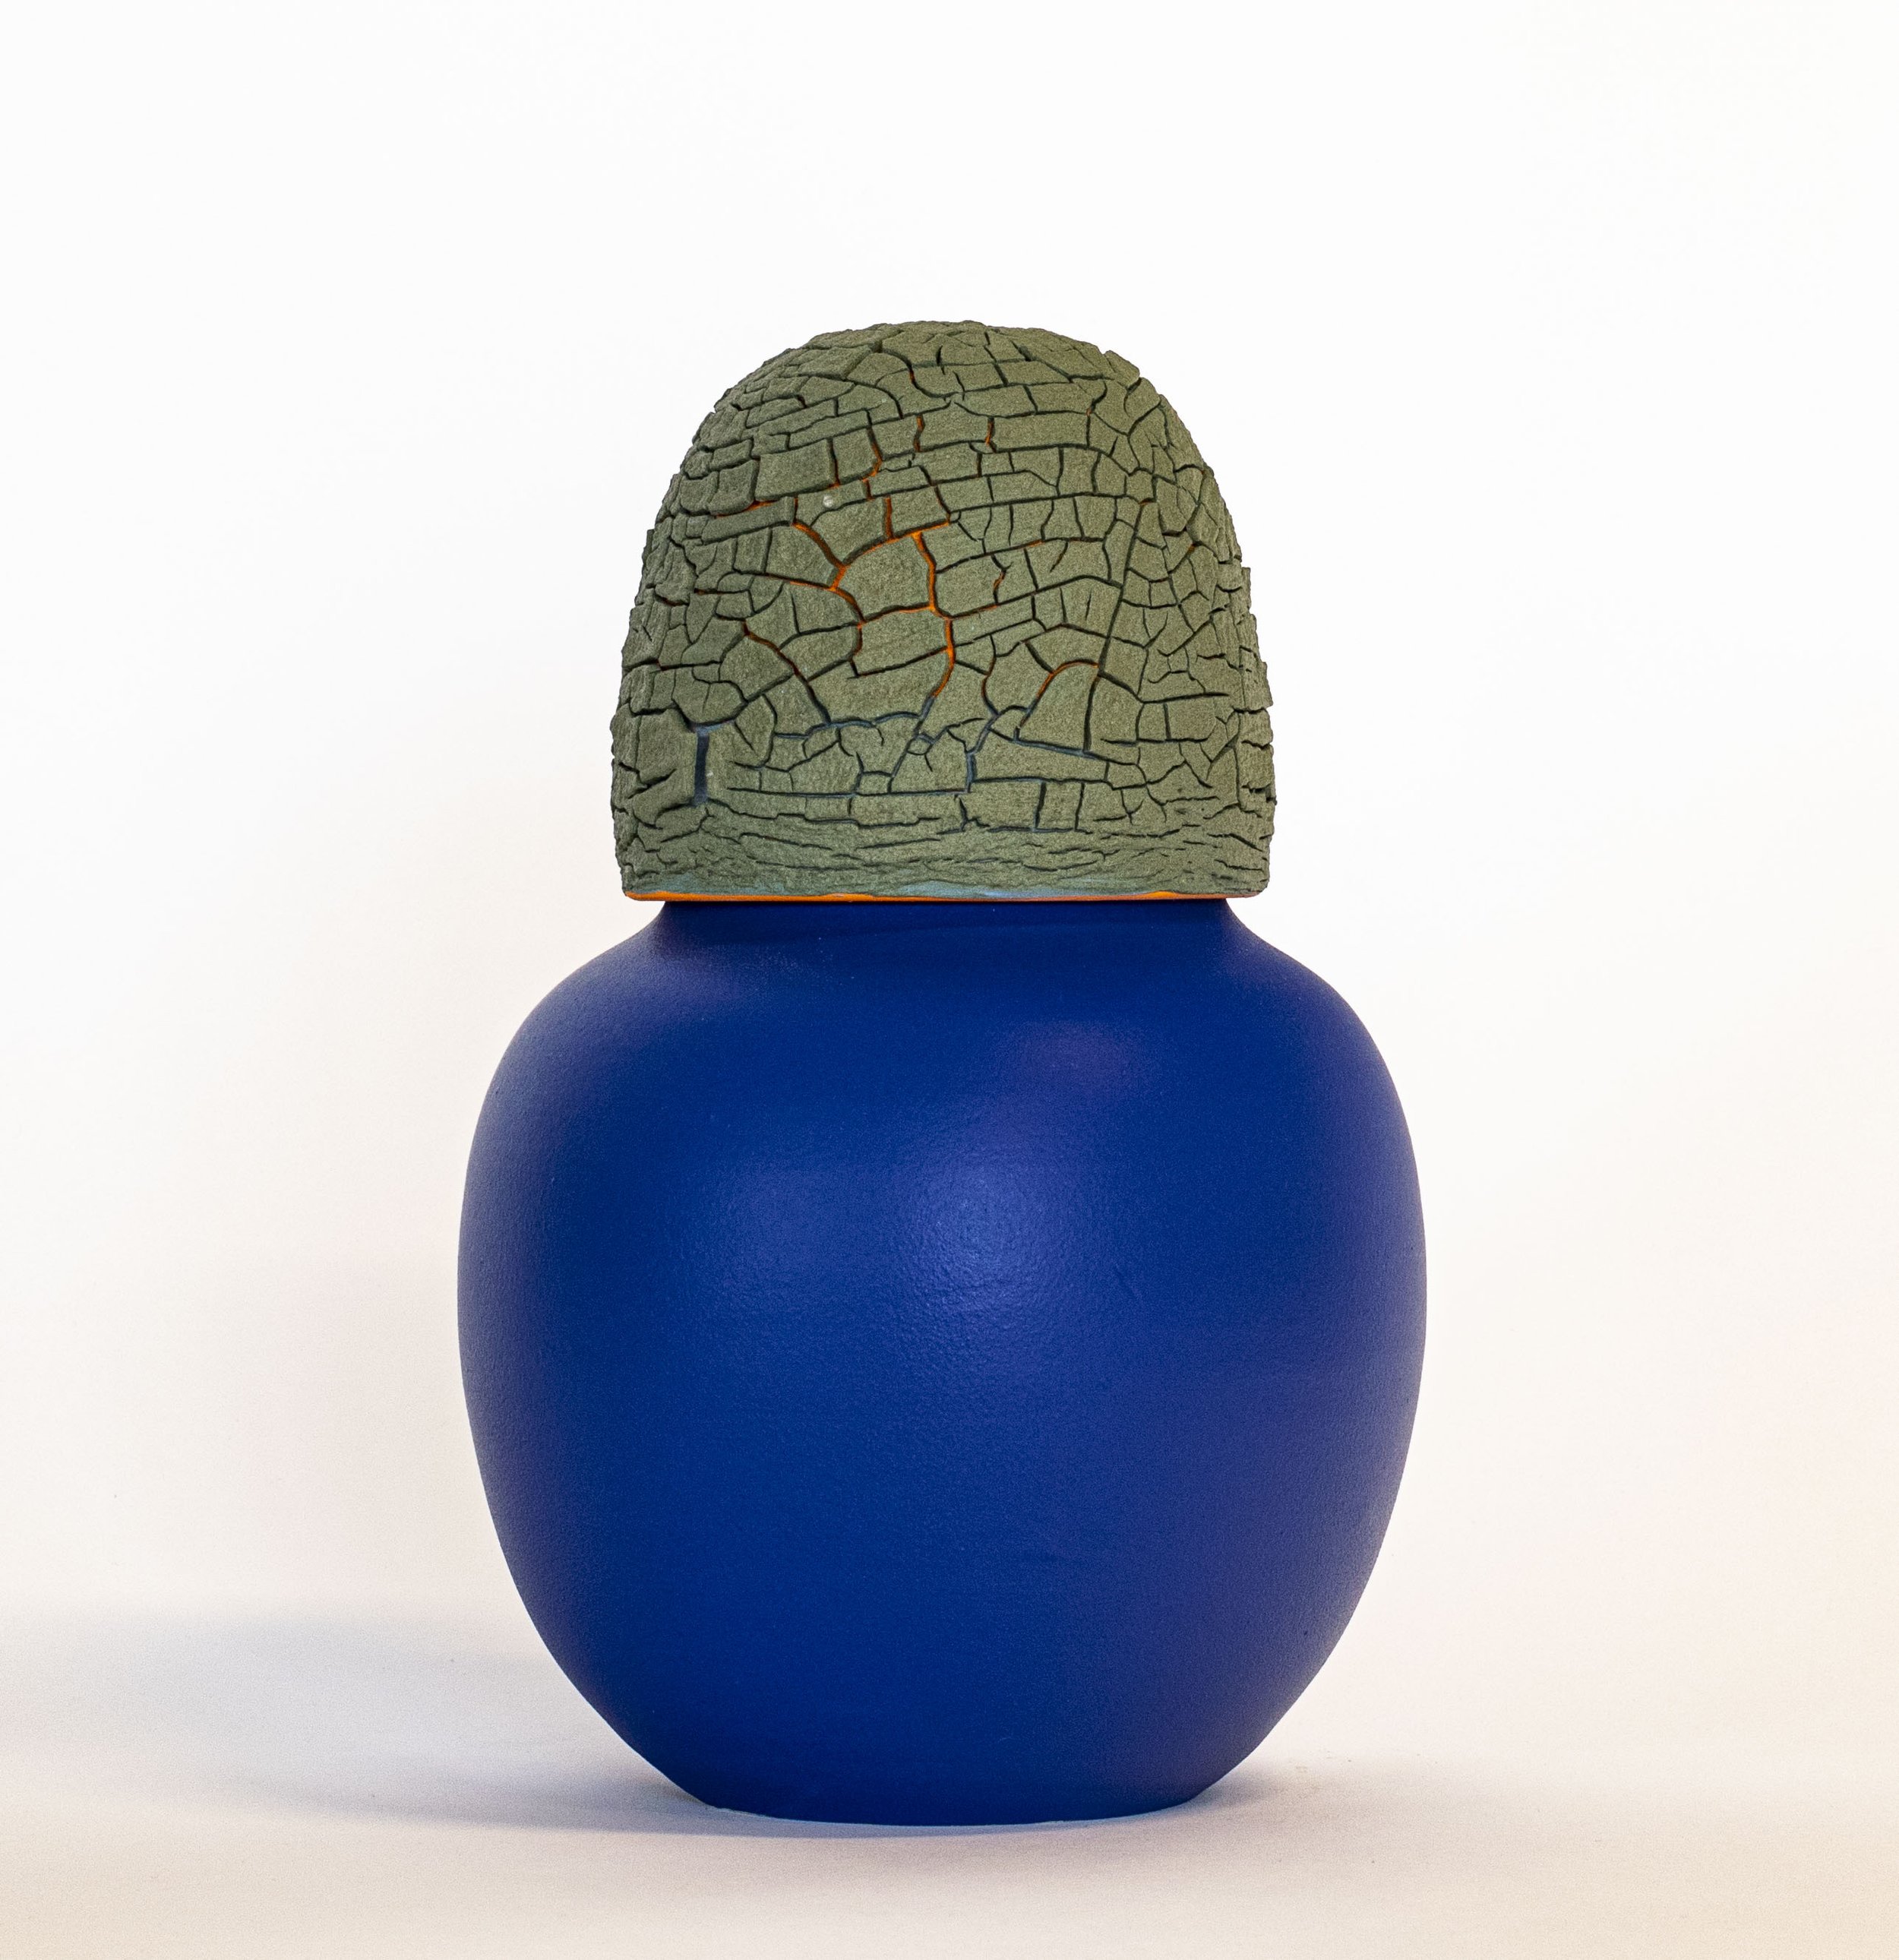  Urn (blue-orange)  Stoneware, glaze 12" x 8" x 8" 